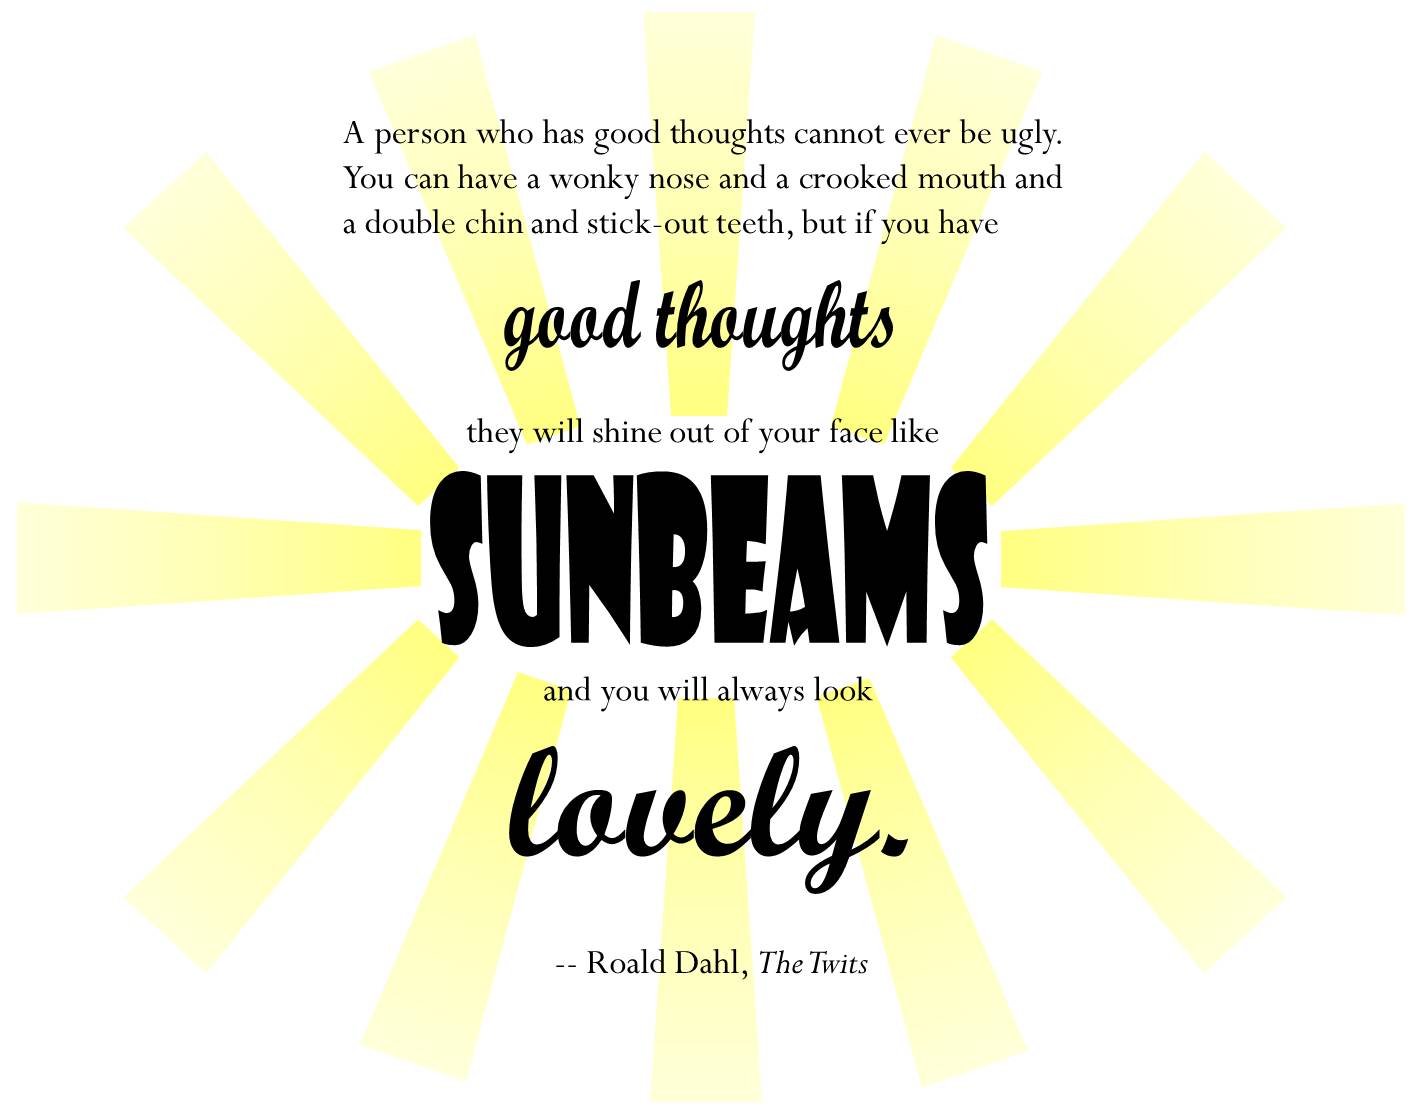 Sunbeams (Roald Dahl)